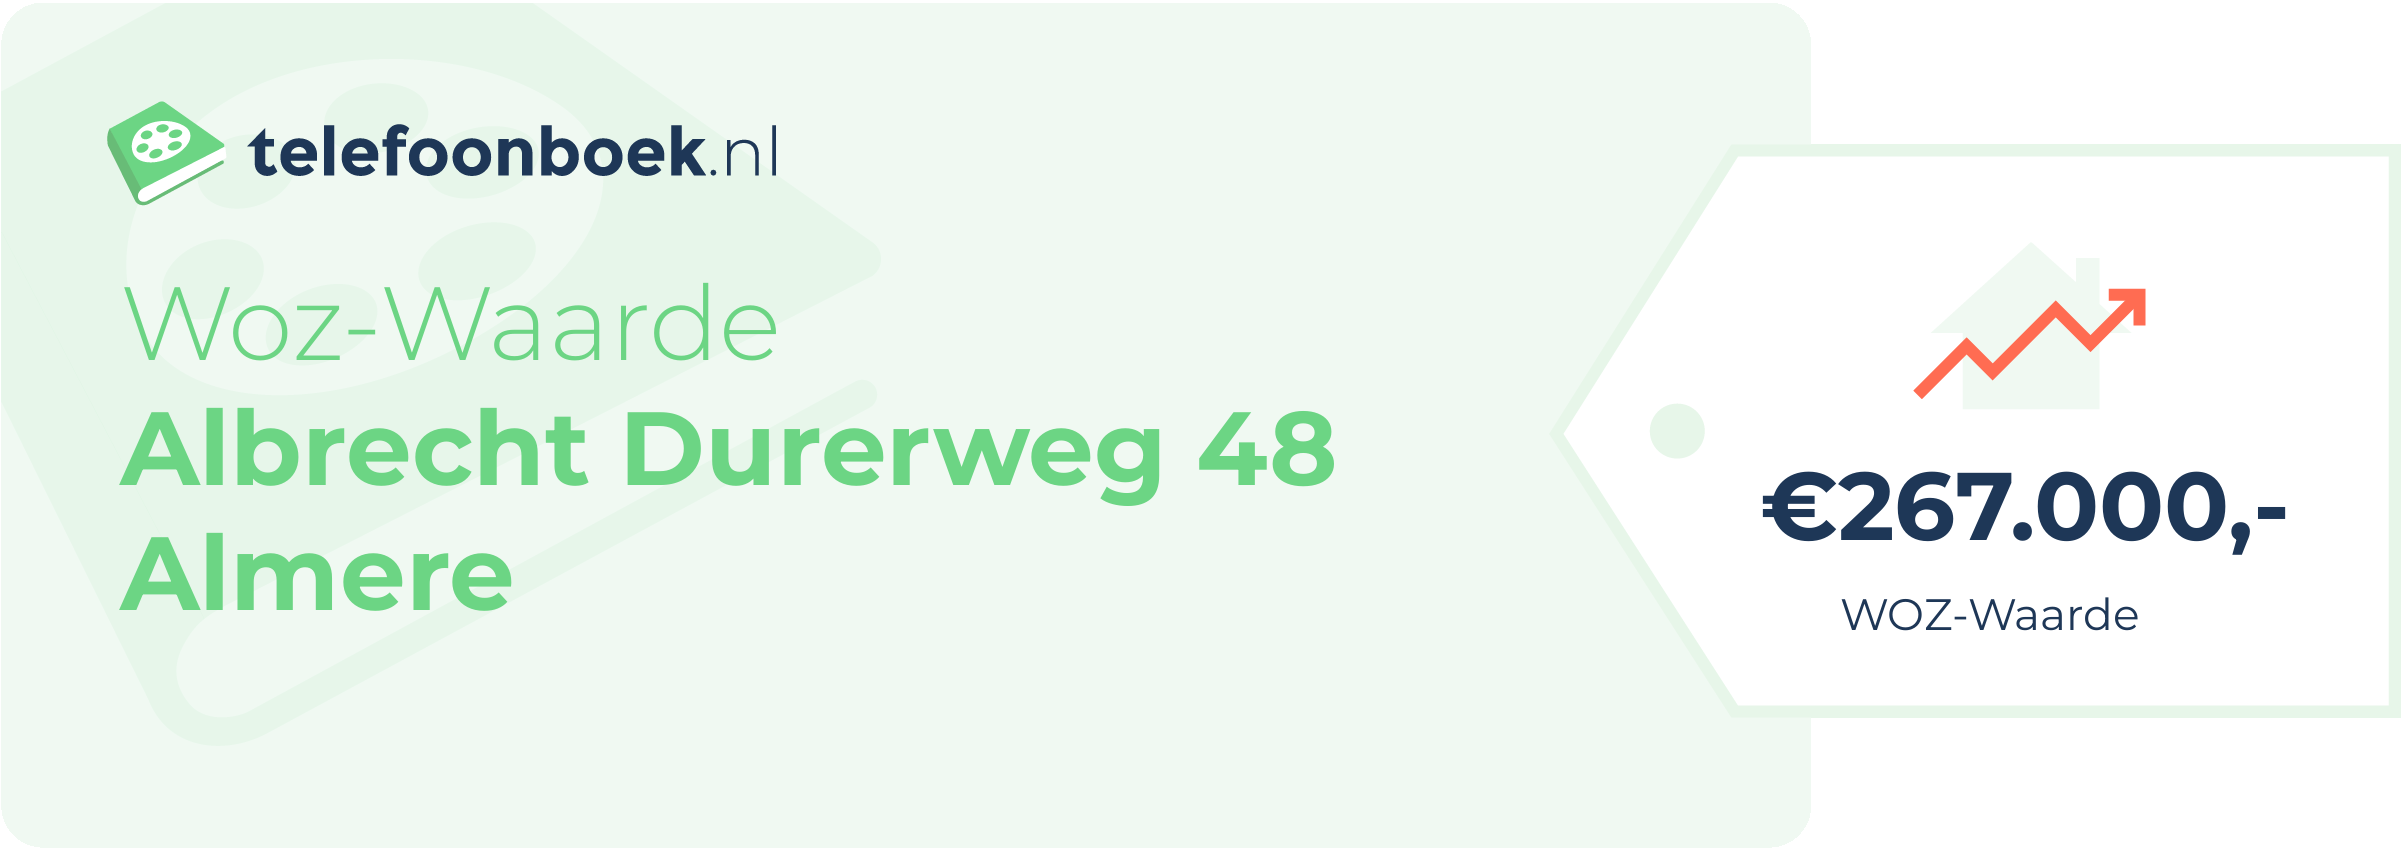 WOZ-waarde Albrecht Durerweg 48 Almere